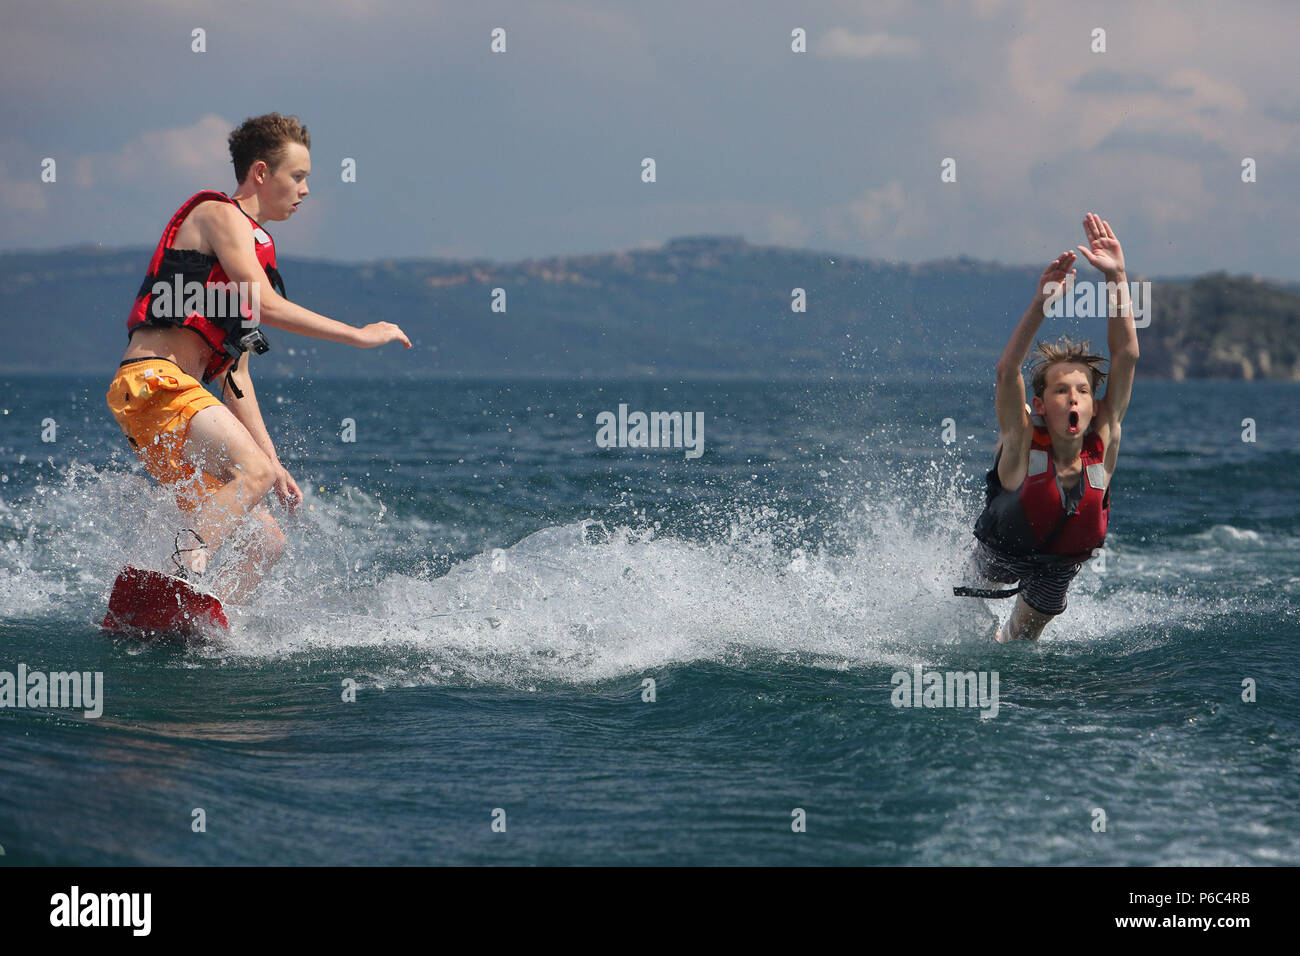 Capodimonte, Italia, ragazzi cadere in acqua durante la pratica dello sci sul lago di Bolsena Foto Stock